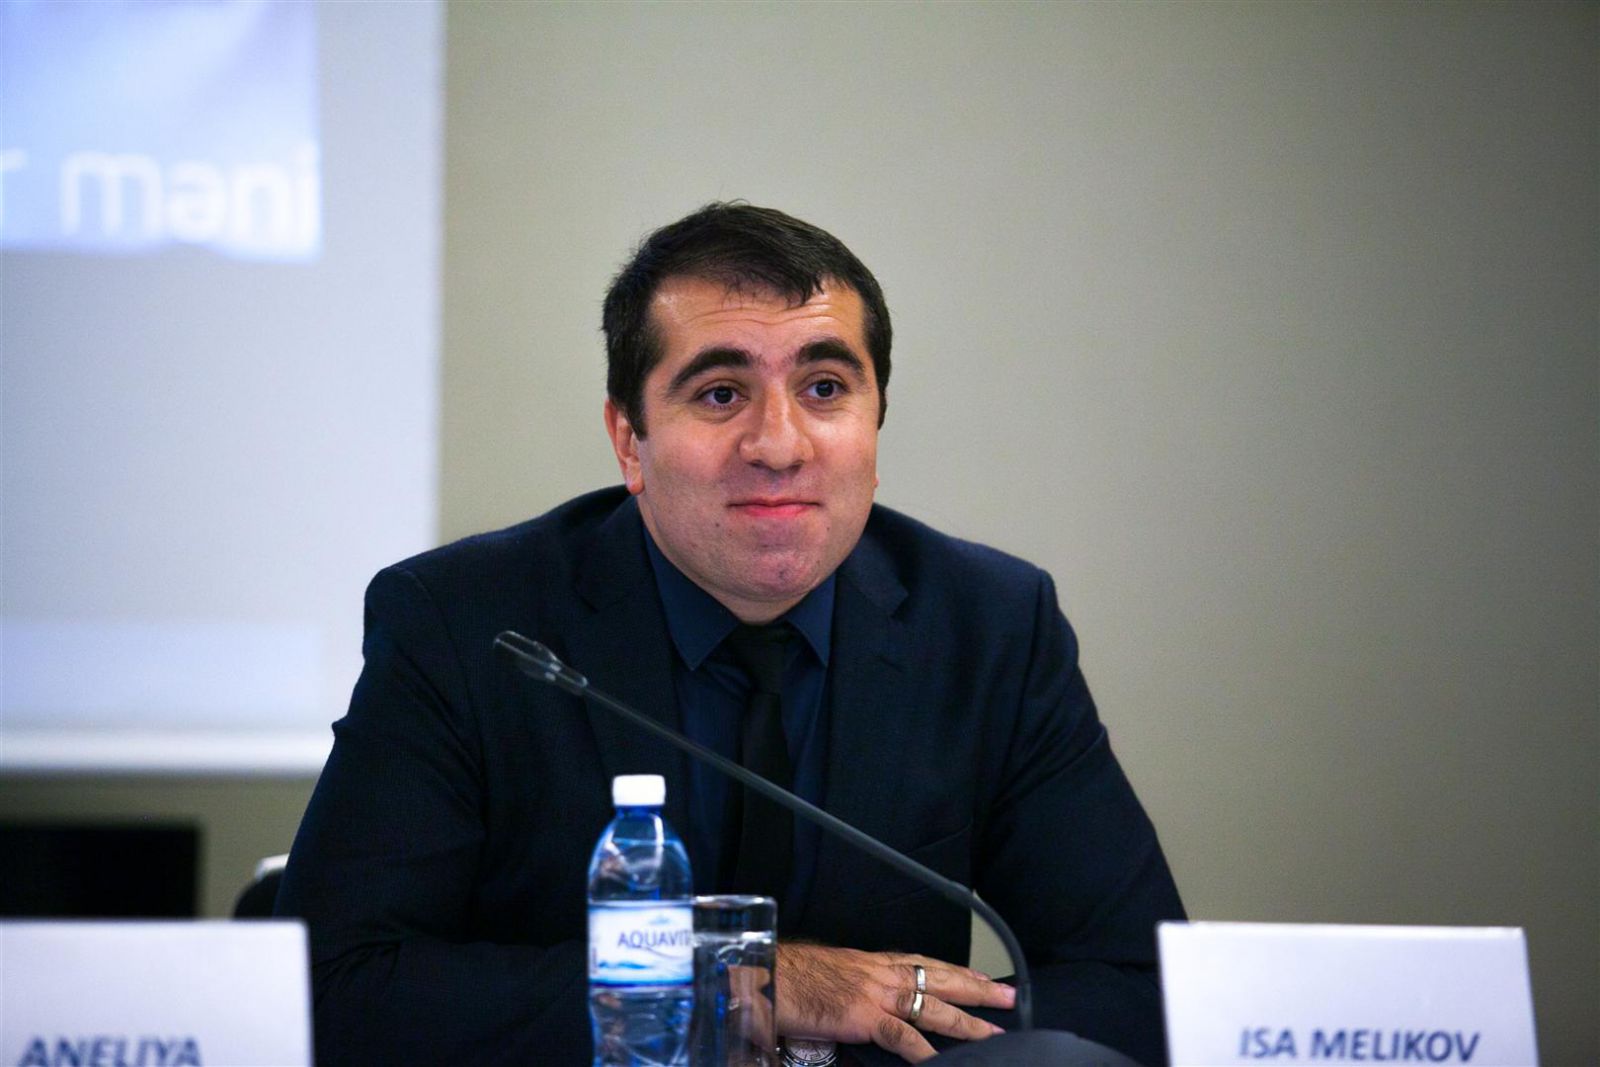 Αζερμπαϊτζάν: Ο Isa Melikov νέος αρχηγός της αποστολής για την Eurovision 2021